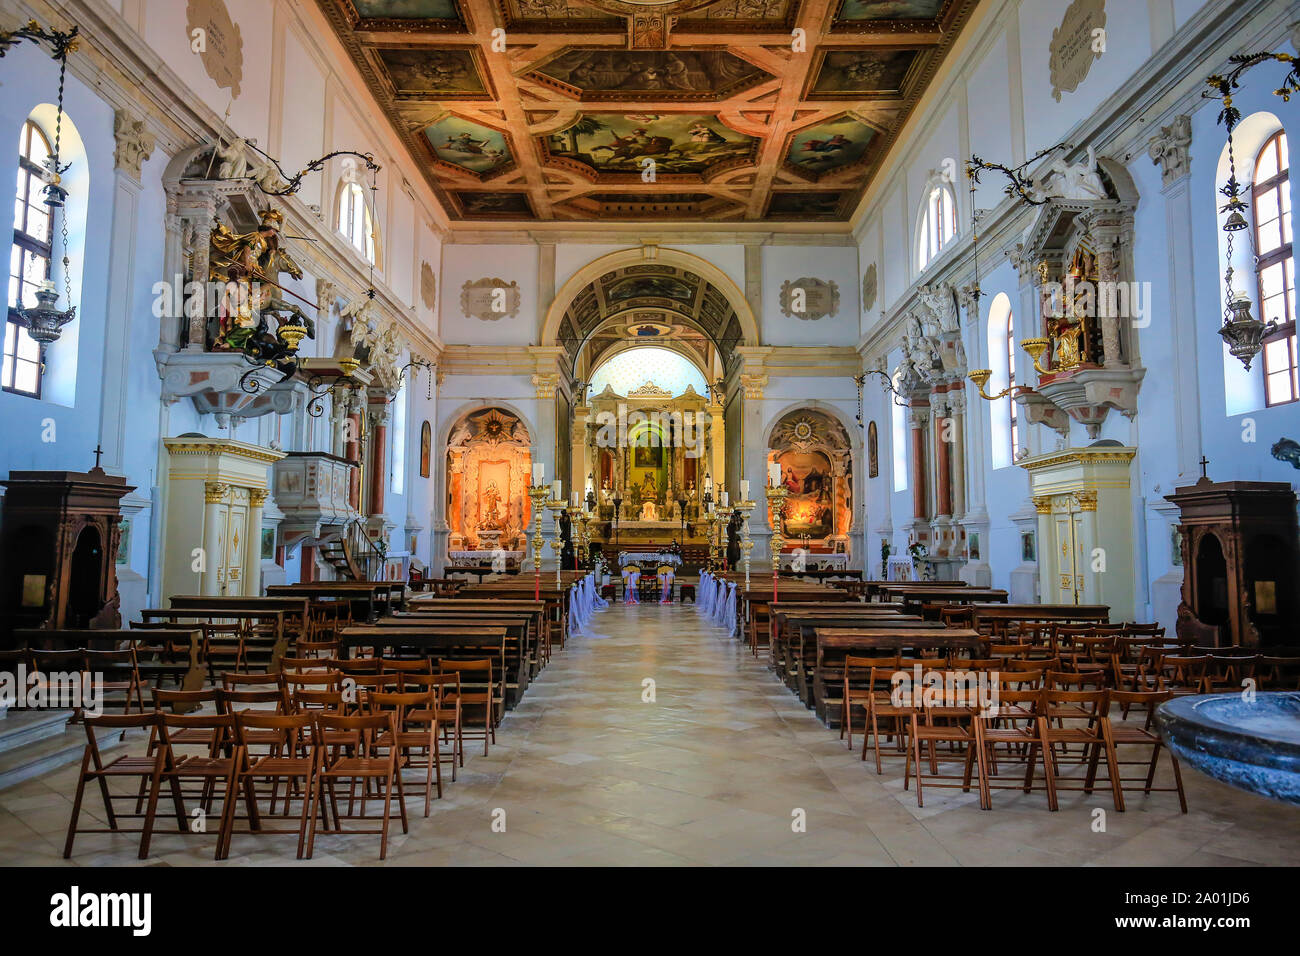 Piran, Istria, Slovenia - Interior view of St. George's Cathedral.  Piran, Istrien, Slowenien - Innenansicht der Kathedrale St. Georg. Stock Photo